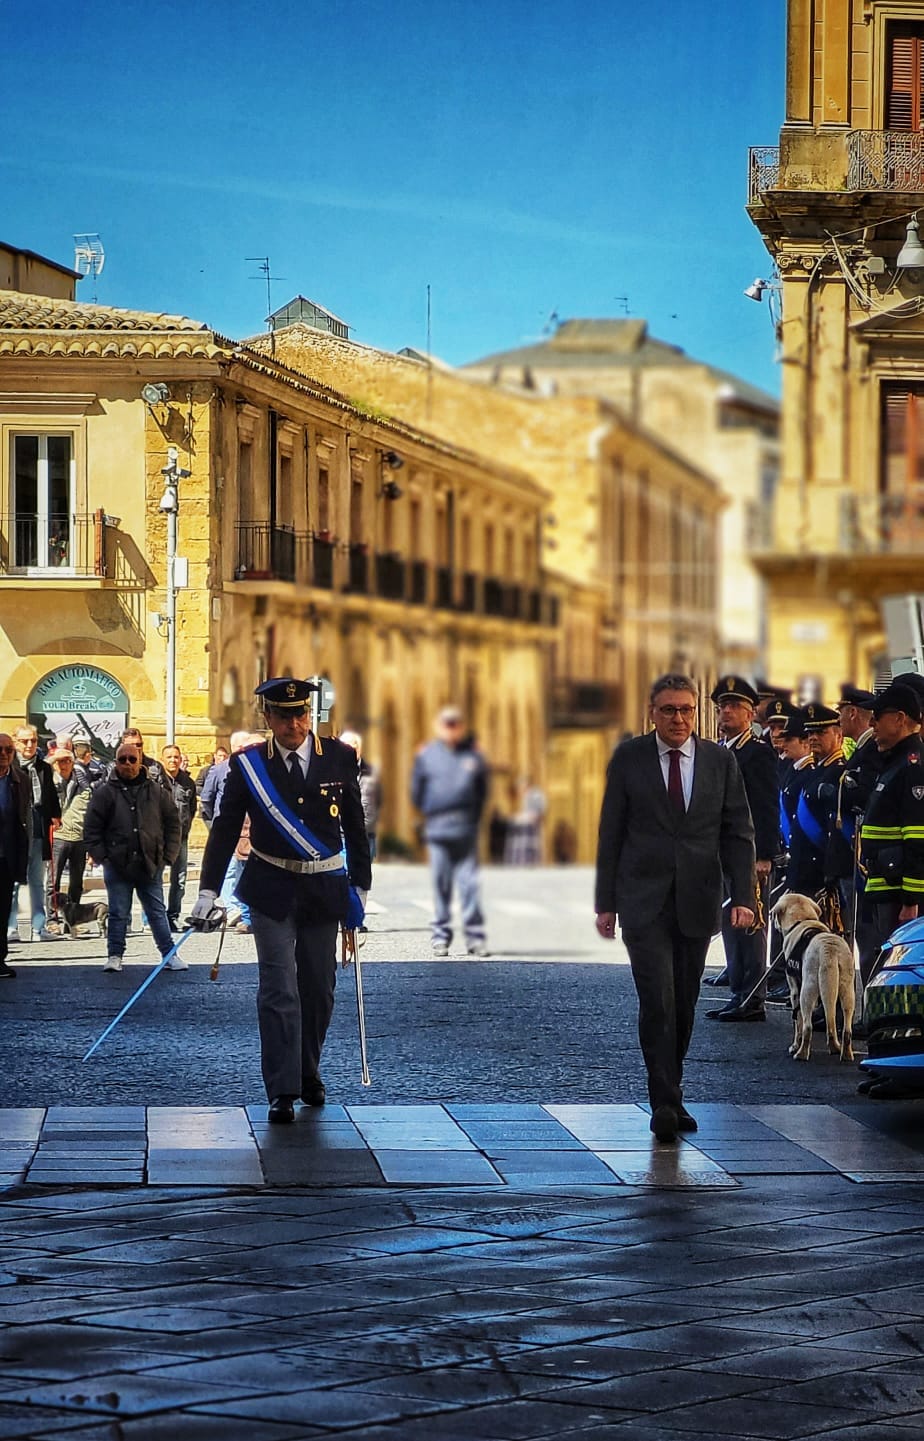 Caltanissetta, la Polizia di Stato oggi celebra oggi il 171° Anniversario della sua fondazione, nell’elegante cornice del Teatro Regina Margherita.